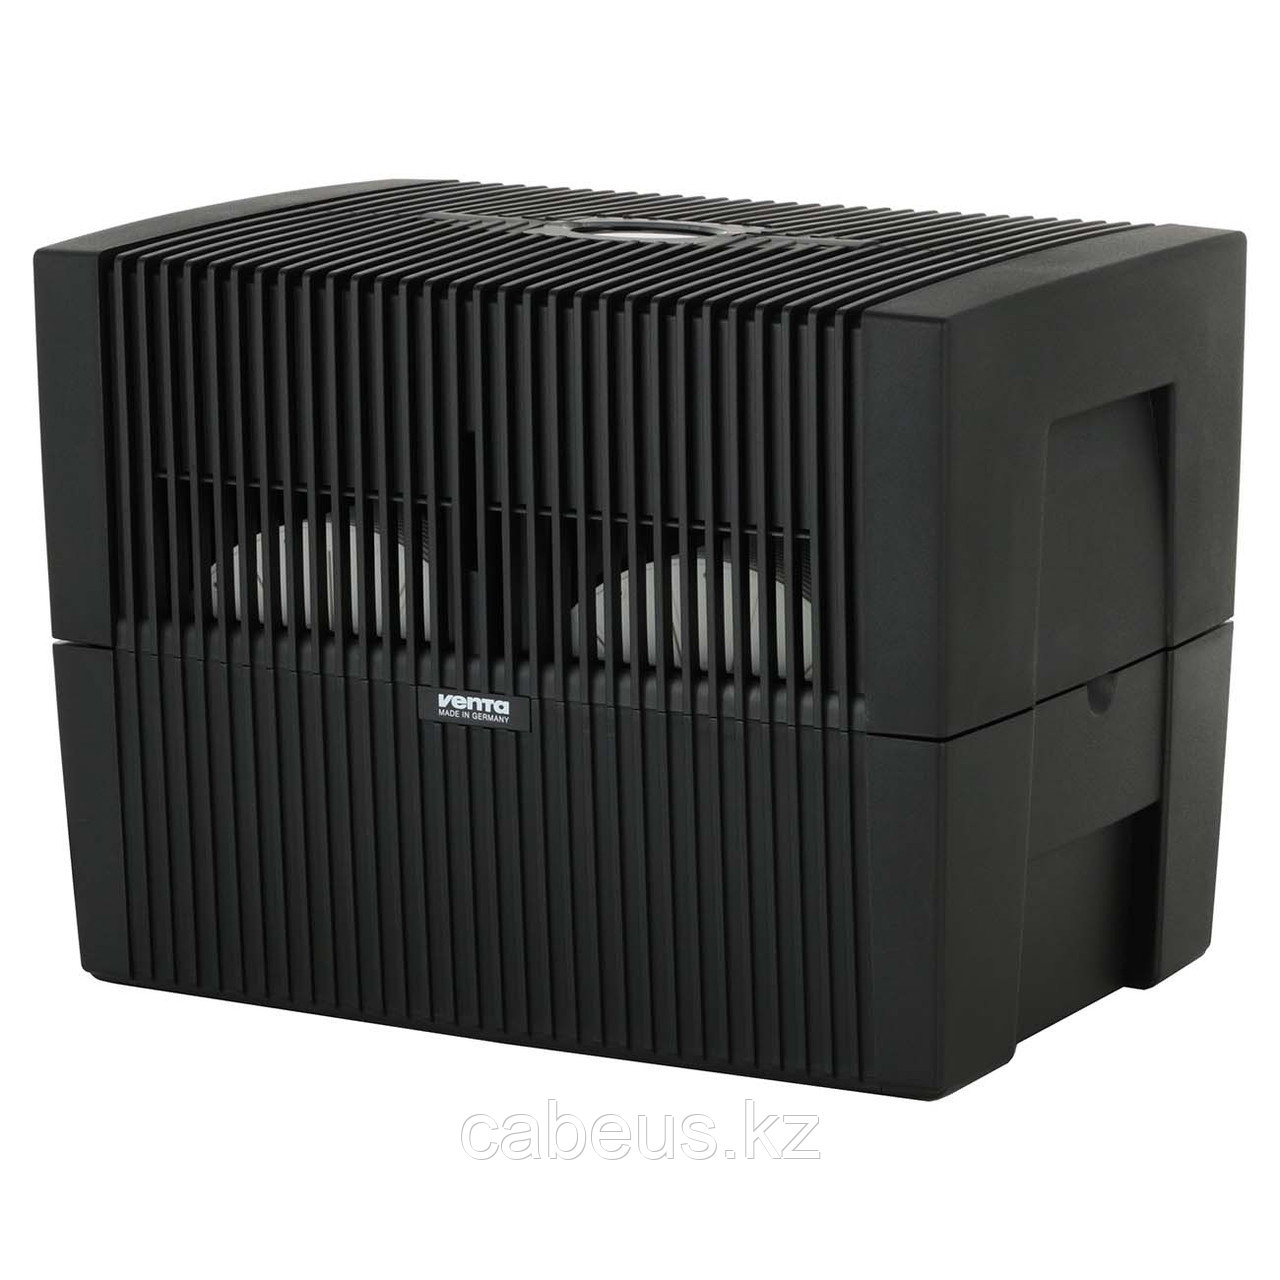 Воздухоувлажнитель-воздухоочиститель Venta LW45 Comfort plus Black